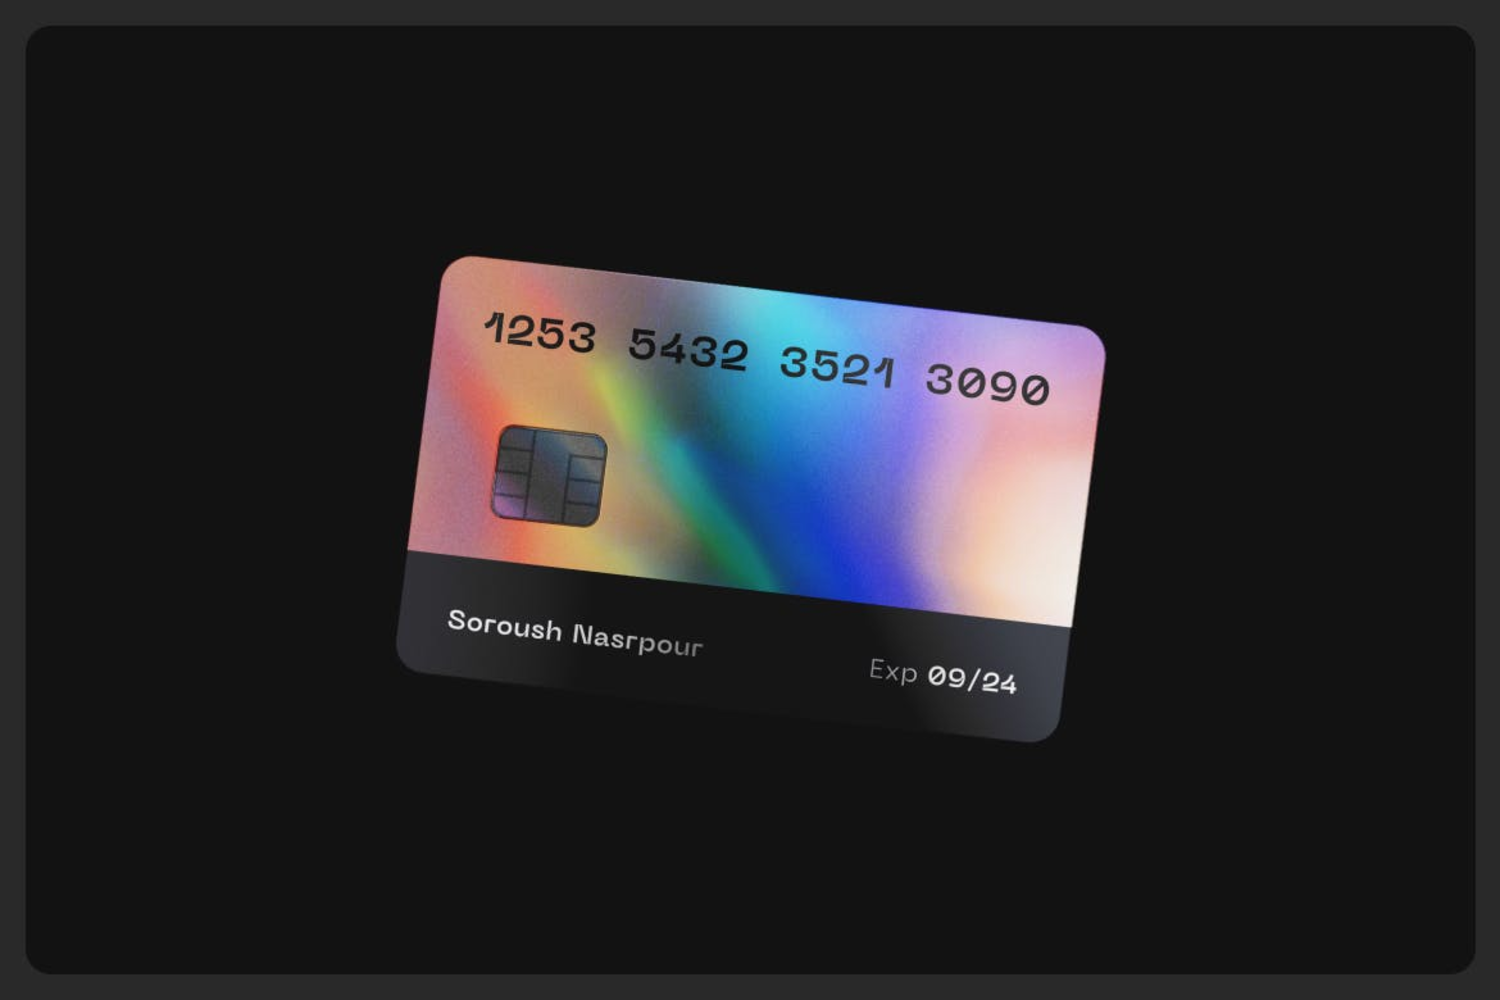 6241 创意设计信用卡样机模型-credit card mockup